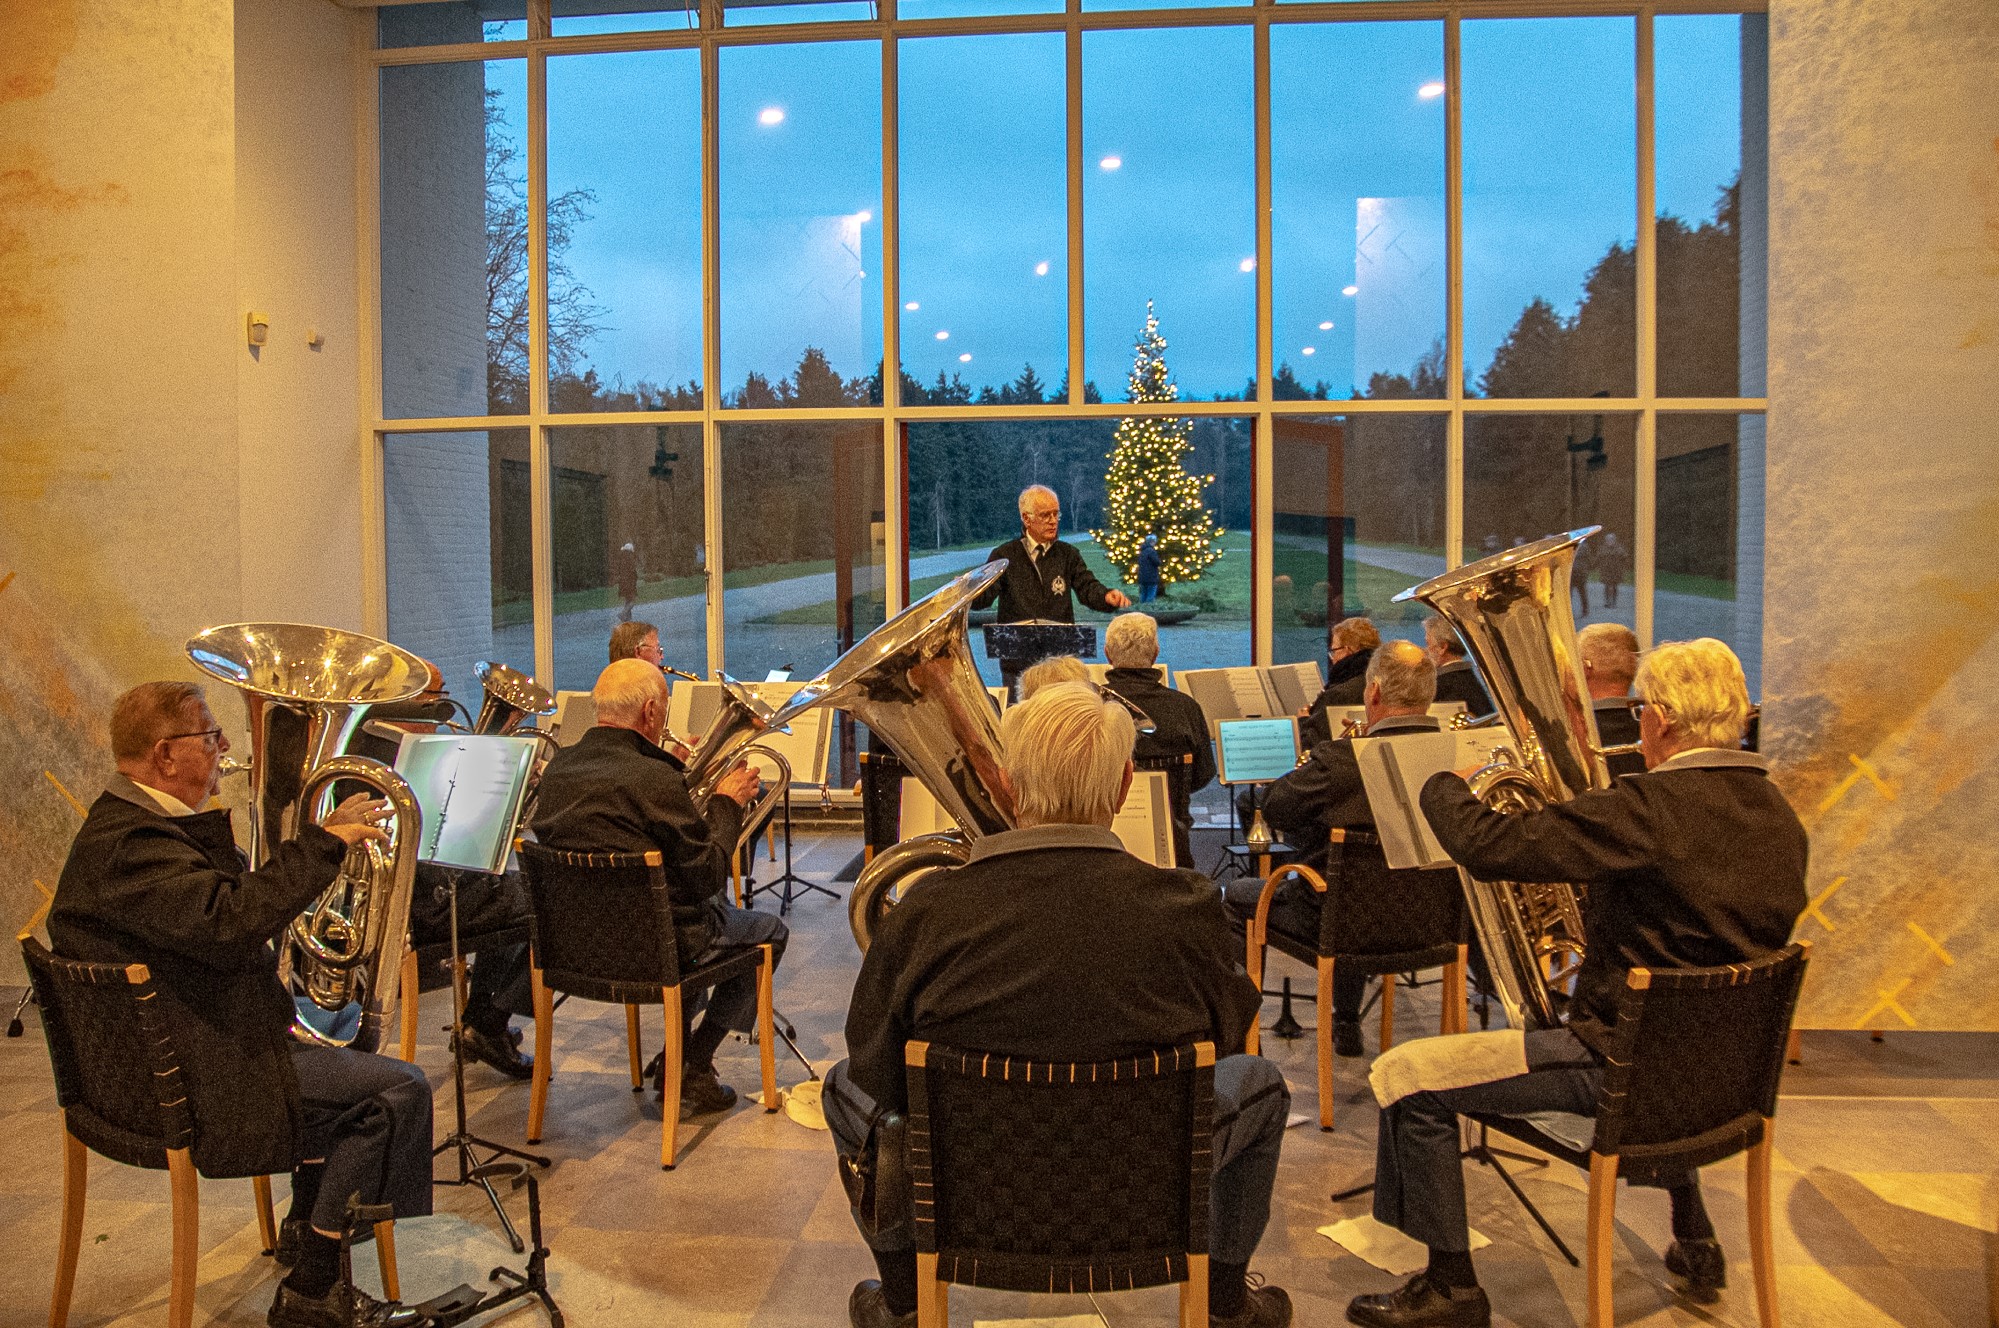 Muziekorkest met blazers voor het raam met een kerstboom op de achtergrond buiten